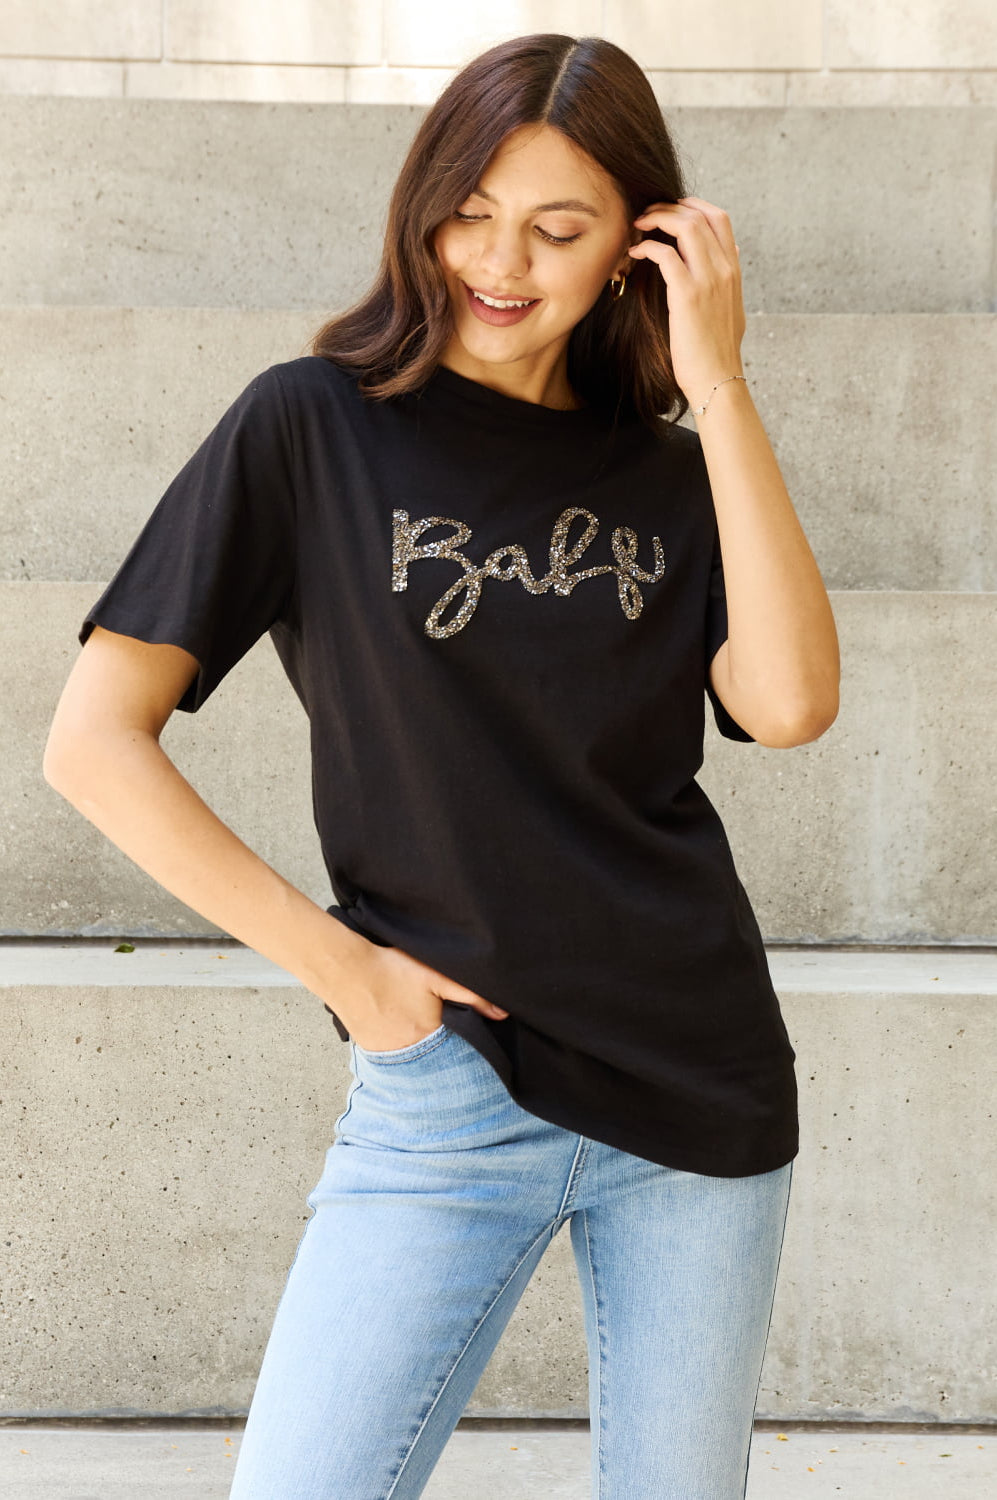 Davi & Dani "Babe" Full Size Gliter Lettering Printed T-Shirt in Black Trendsi